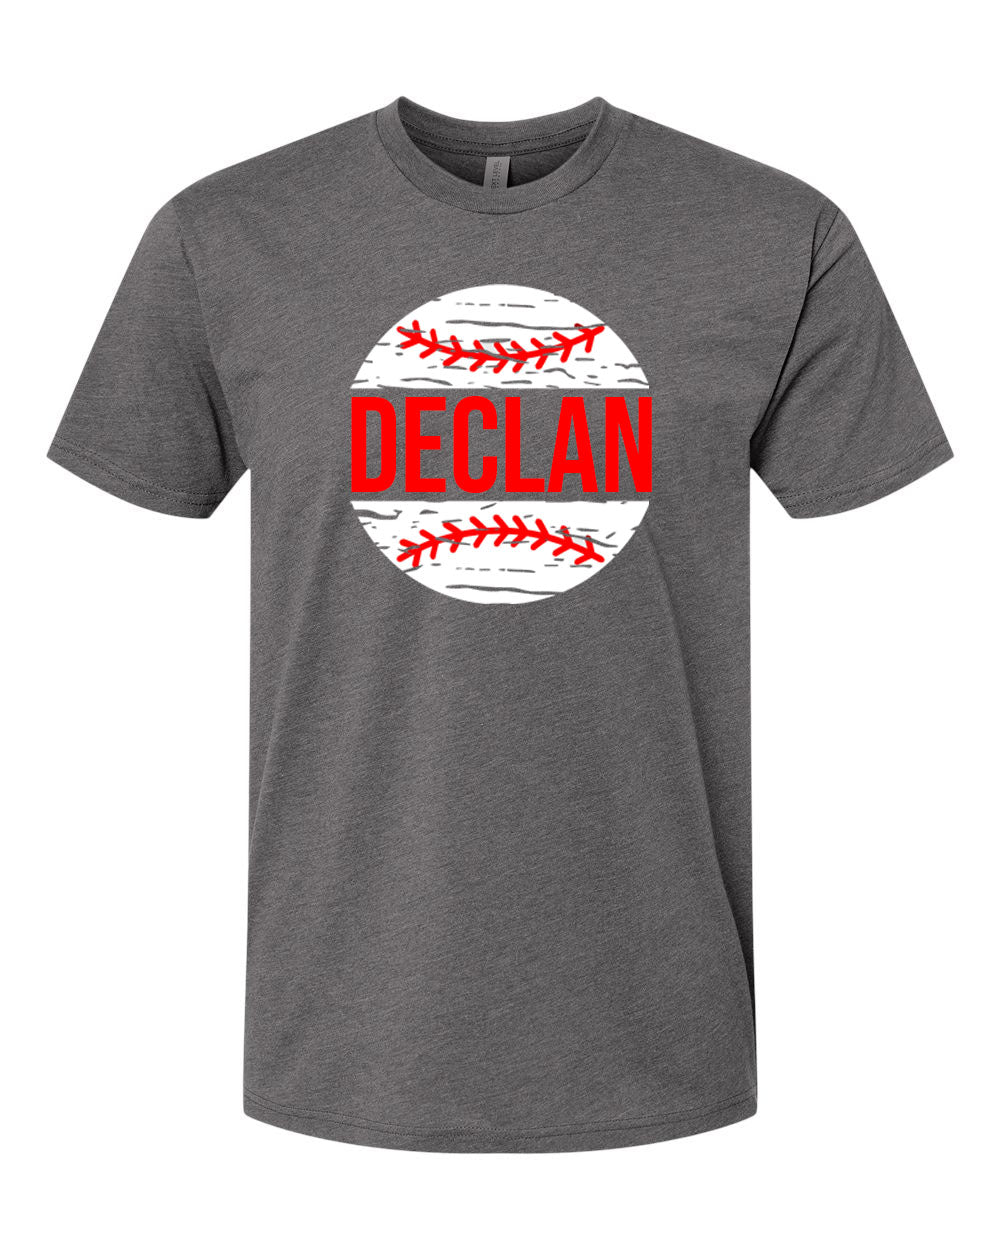 Personalized baseball t-shirt